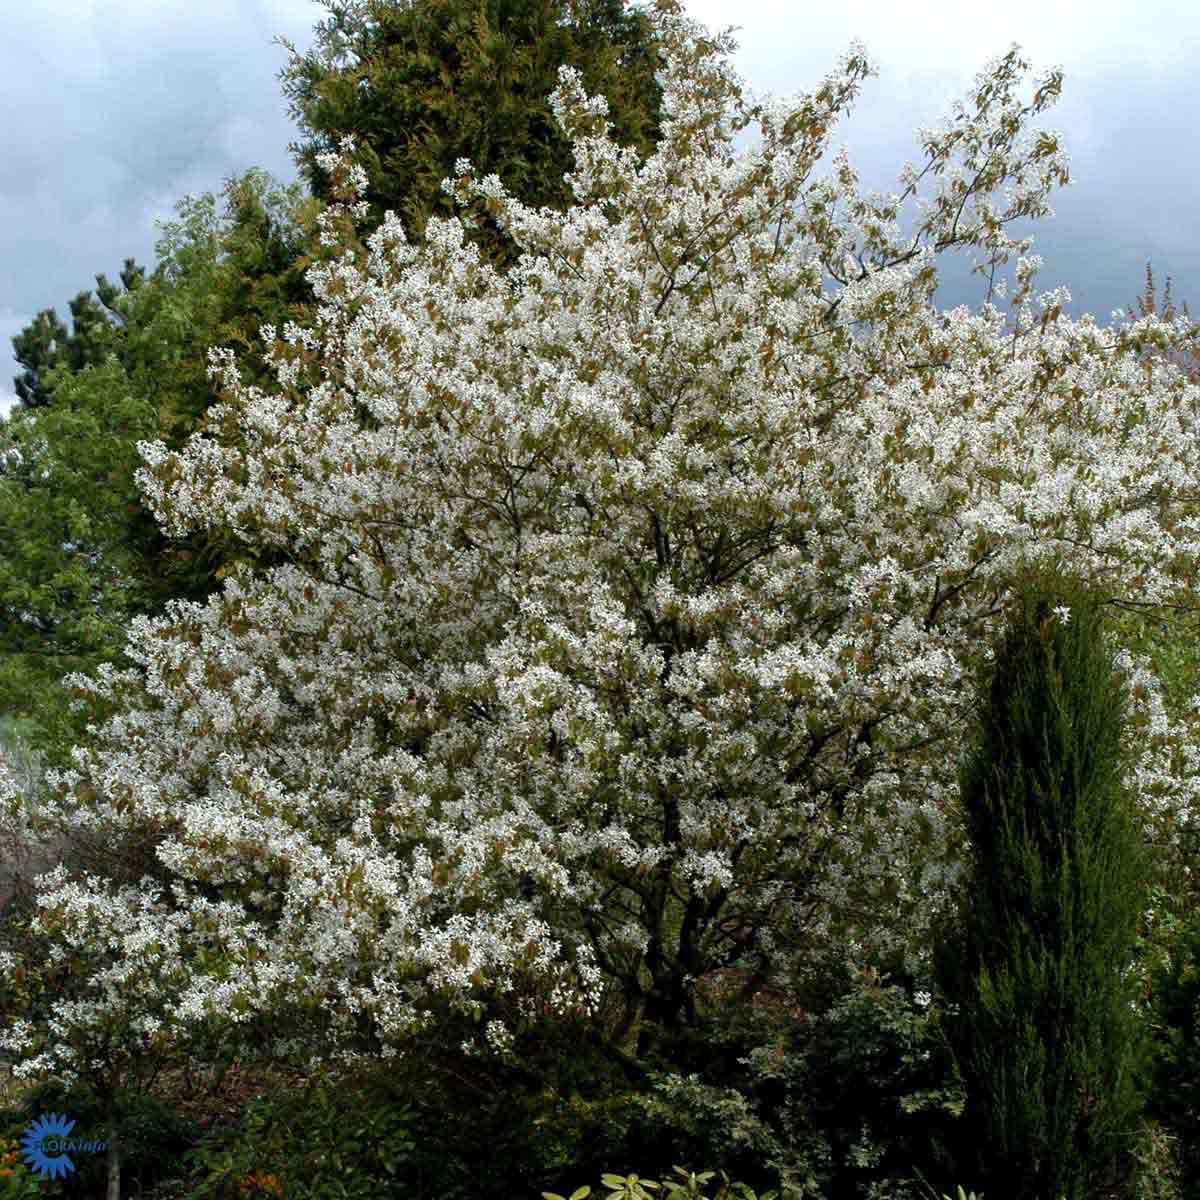 ærmispel er en af de helt store klassikkere i haven. De er små træer eller buske, der får en sky af fine lette hvide stjerneformede forårsblomster der danner en hel kæmpe sky omkring træet i foråret